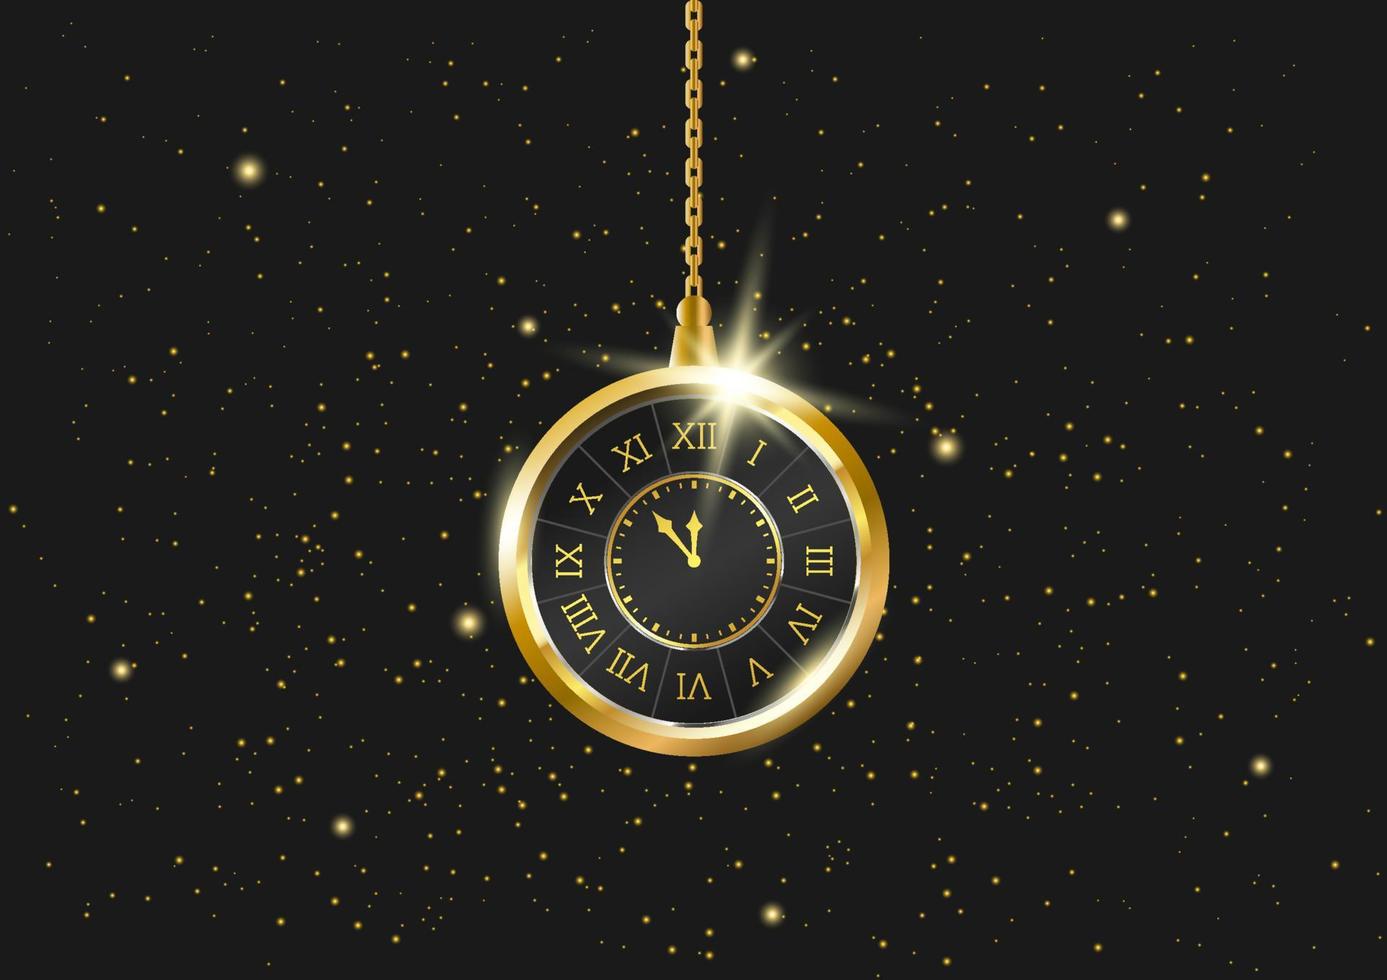 realistische hängende vintage-uhr mit sternen auf dem schwarzen hintergrund. goldene 3D-Uhr, die an einer Kette hängt. Darstellung der Zeit. Zeitreisender, das Universum, die vierte Dimension. vektor